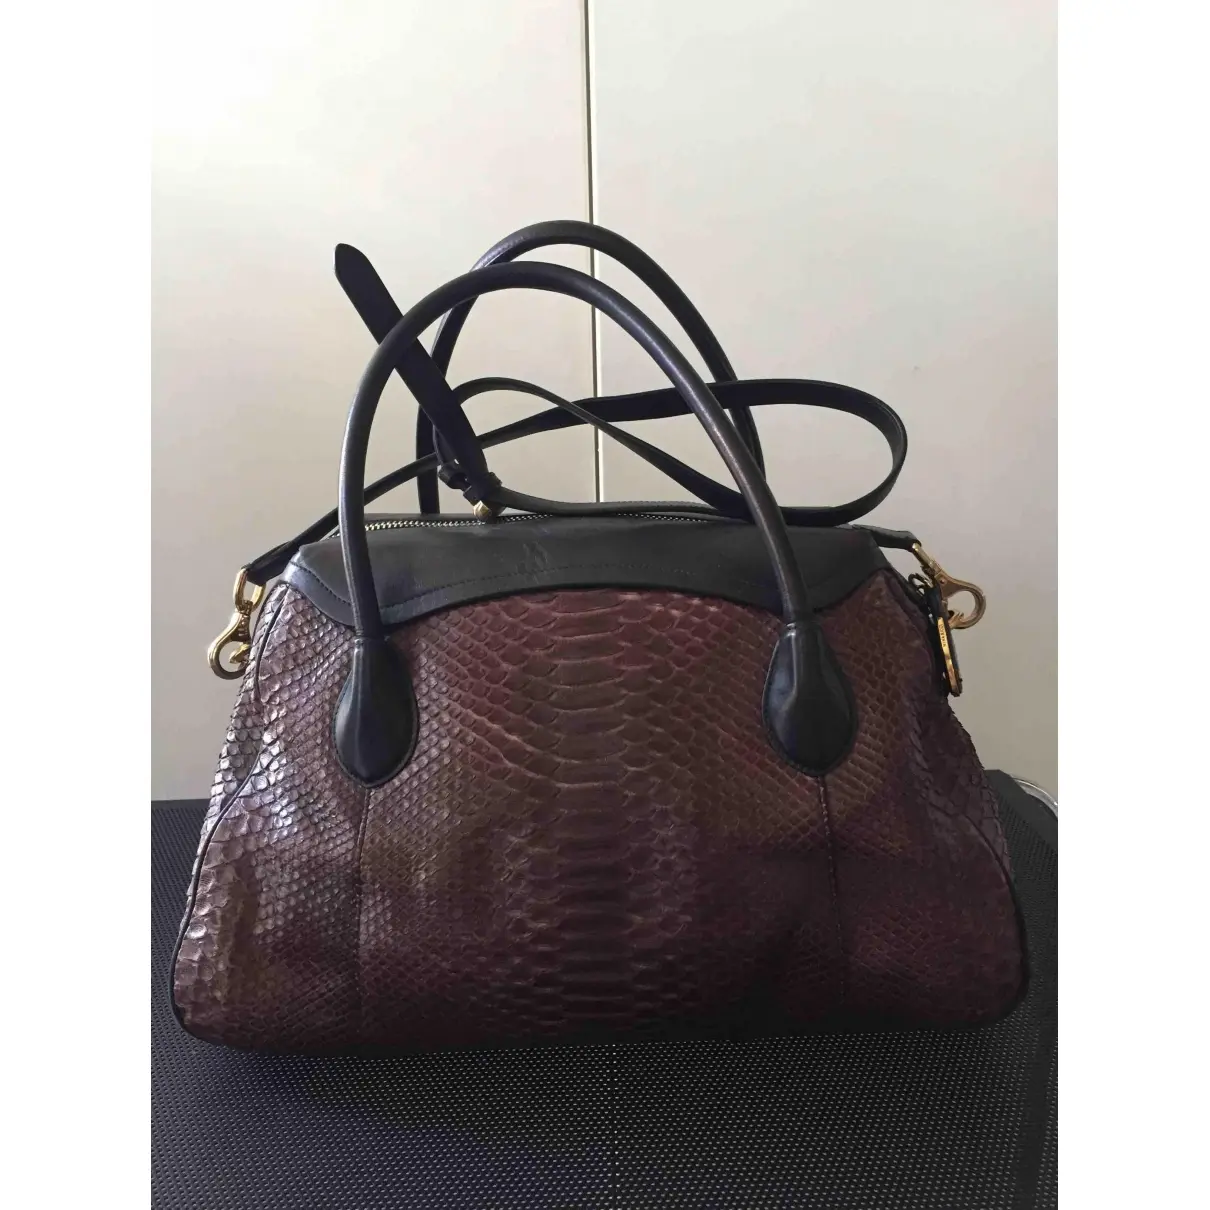 Buy Nina Ricci Python handbag online